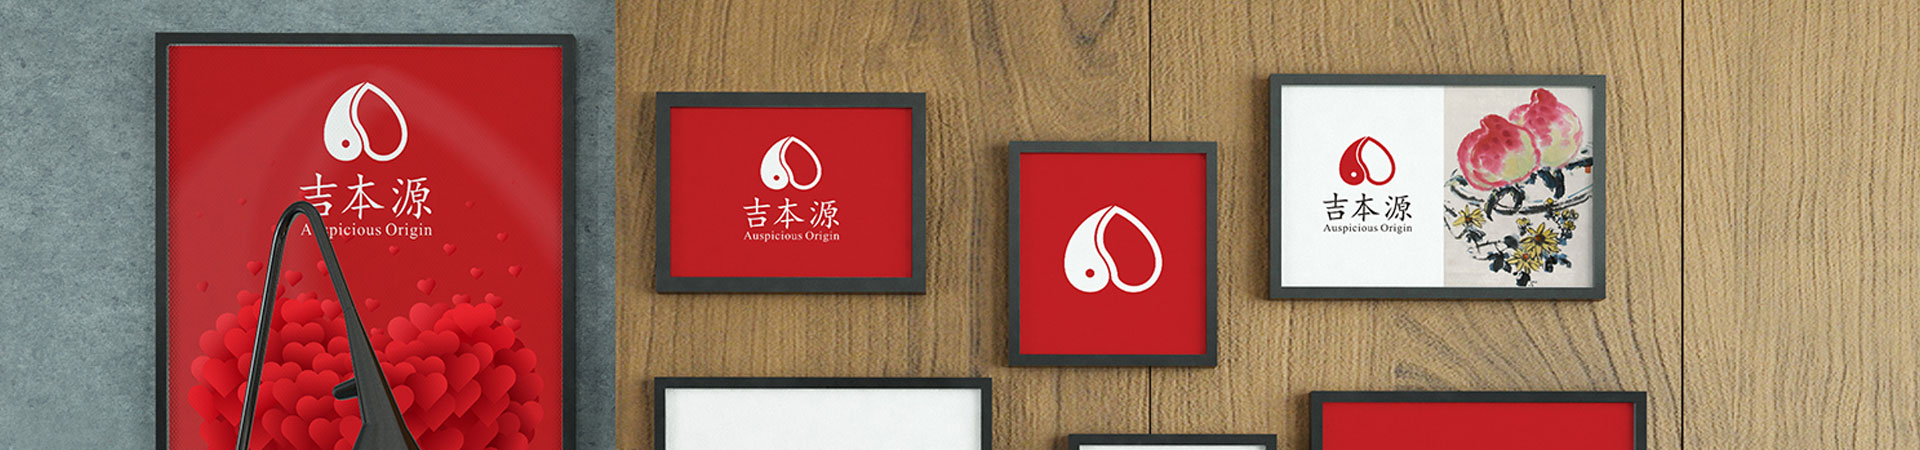 深圳網頁設計,深圳logo設計公司,標志設計公司